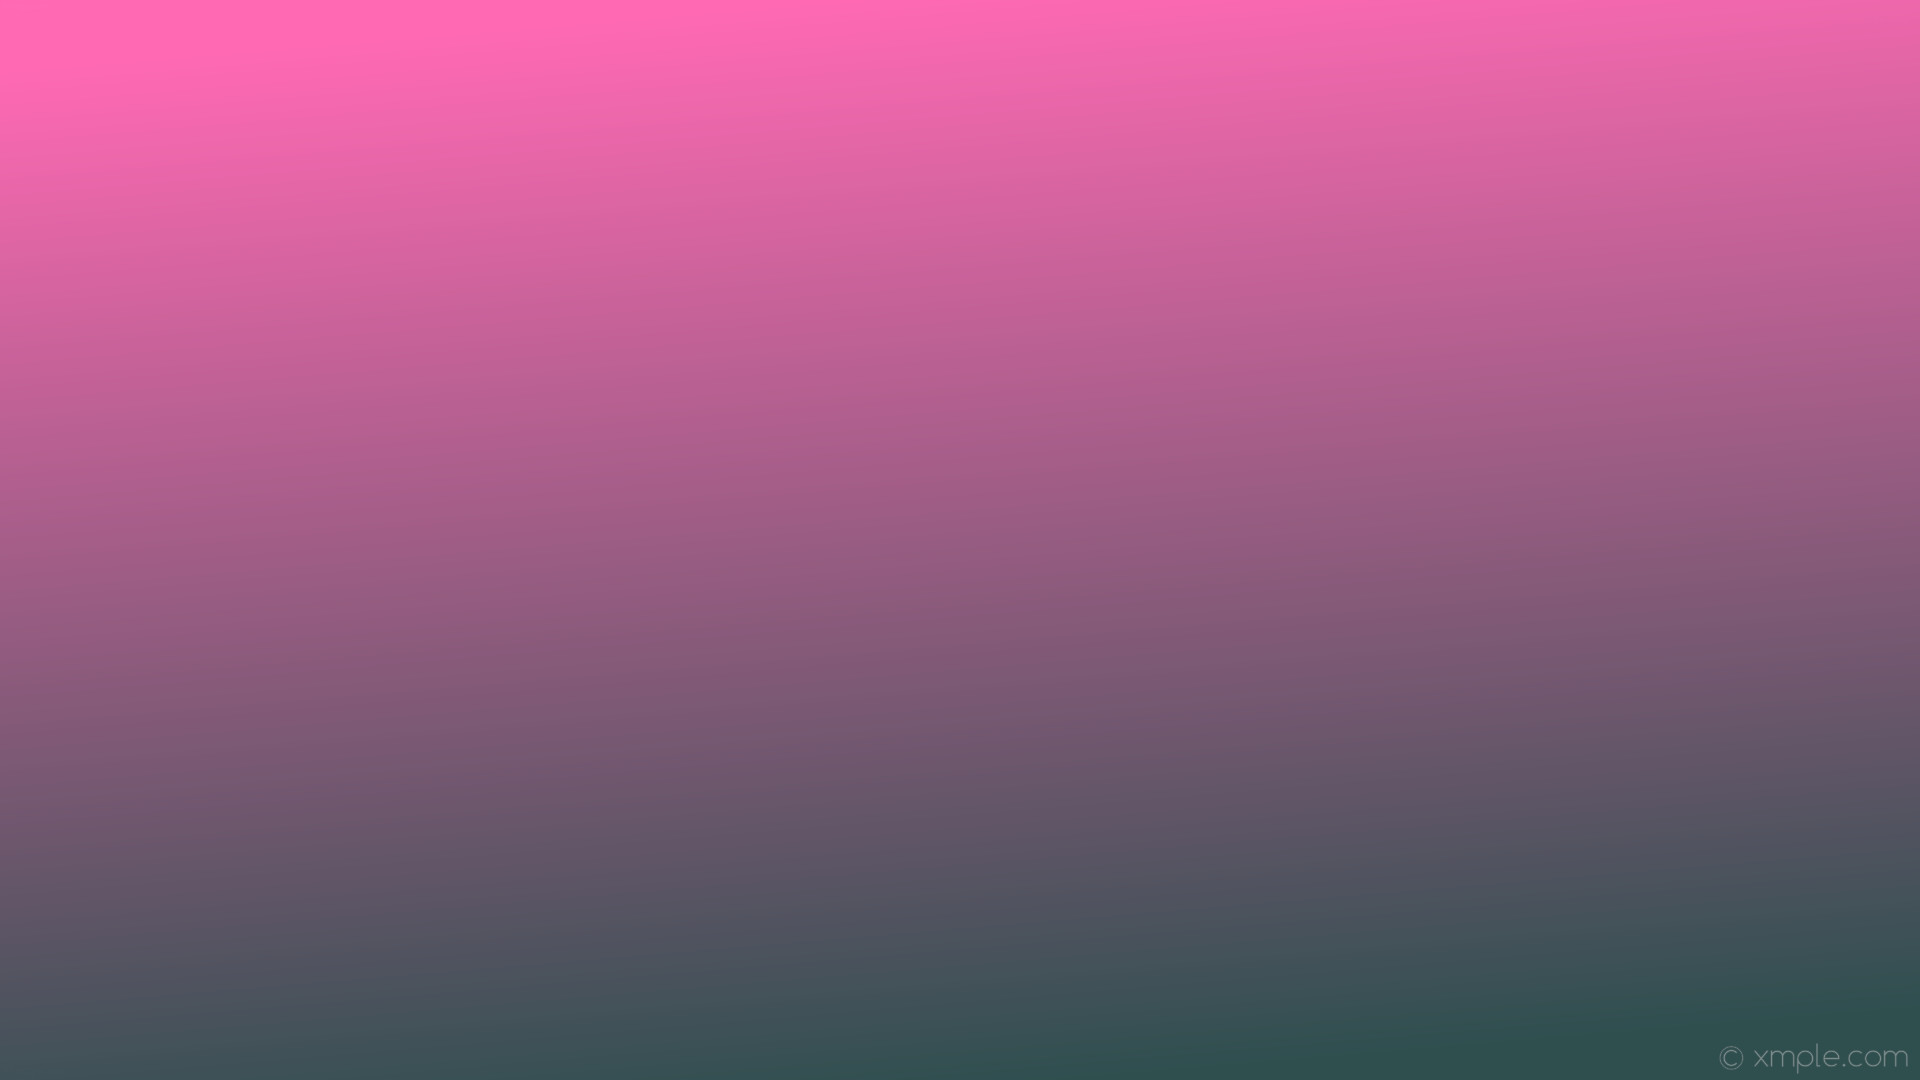 1920x1080 wallpaper pink gradient grey linear hot pink dark slate gray #ff69b4  #2f4f4f 105Â°